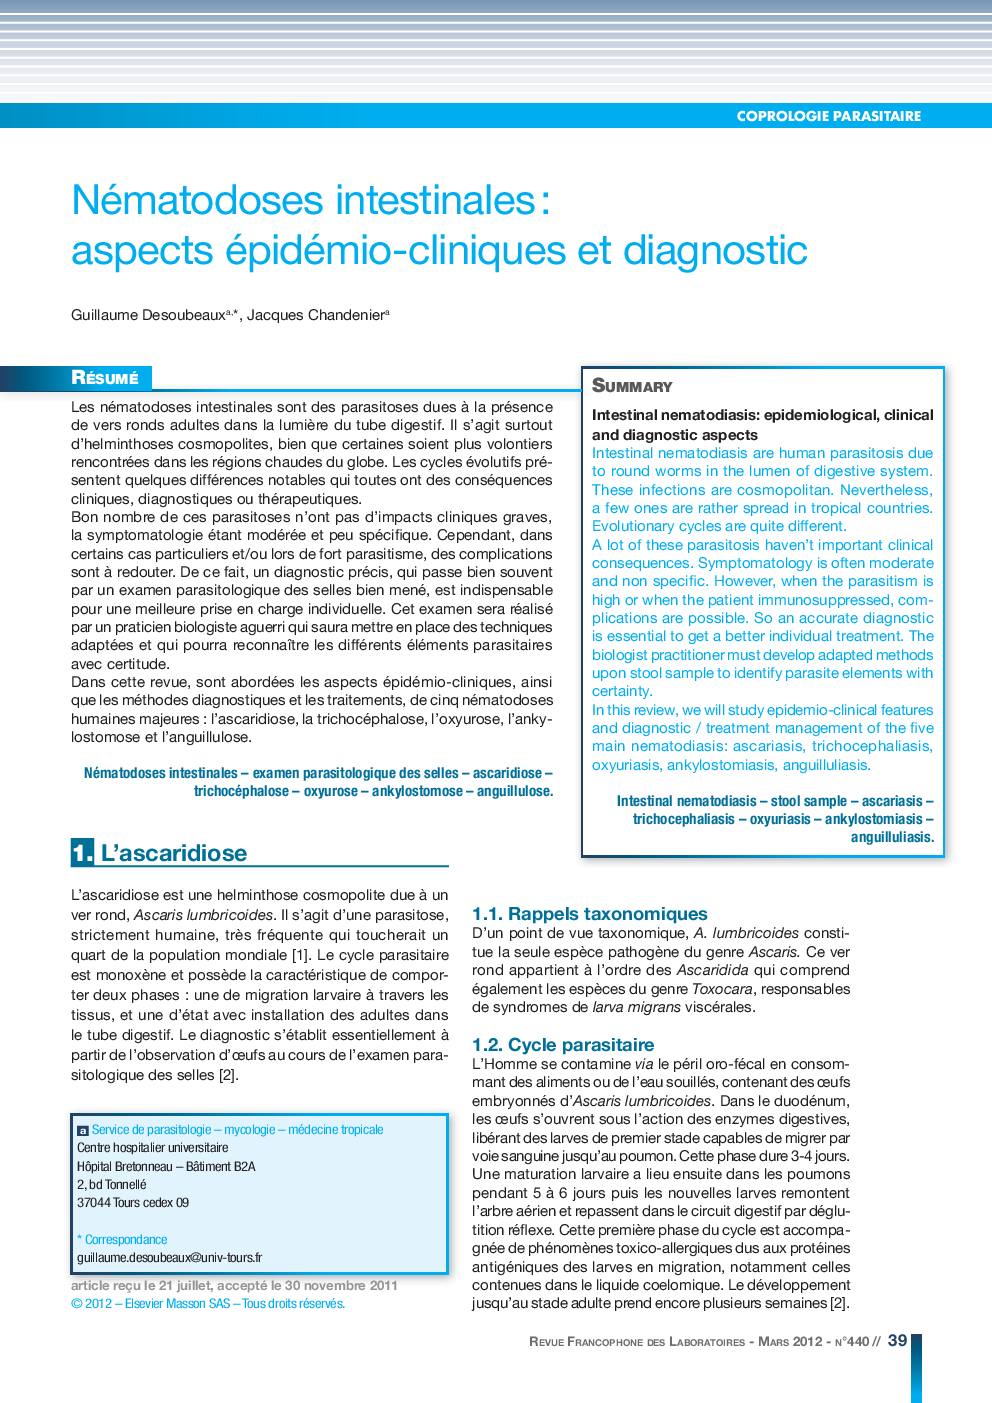 Nématodoses intestinales: aspects épidémio-cliniques et diagnostic